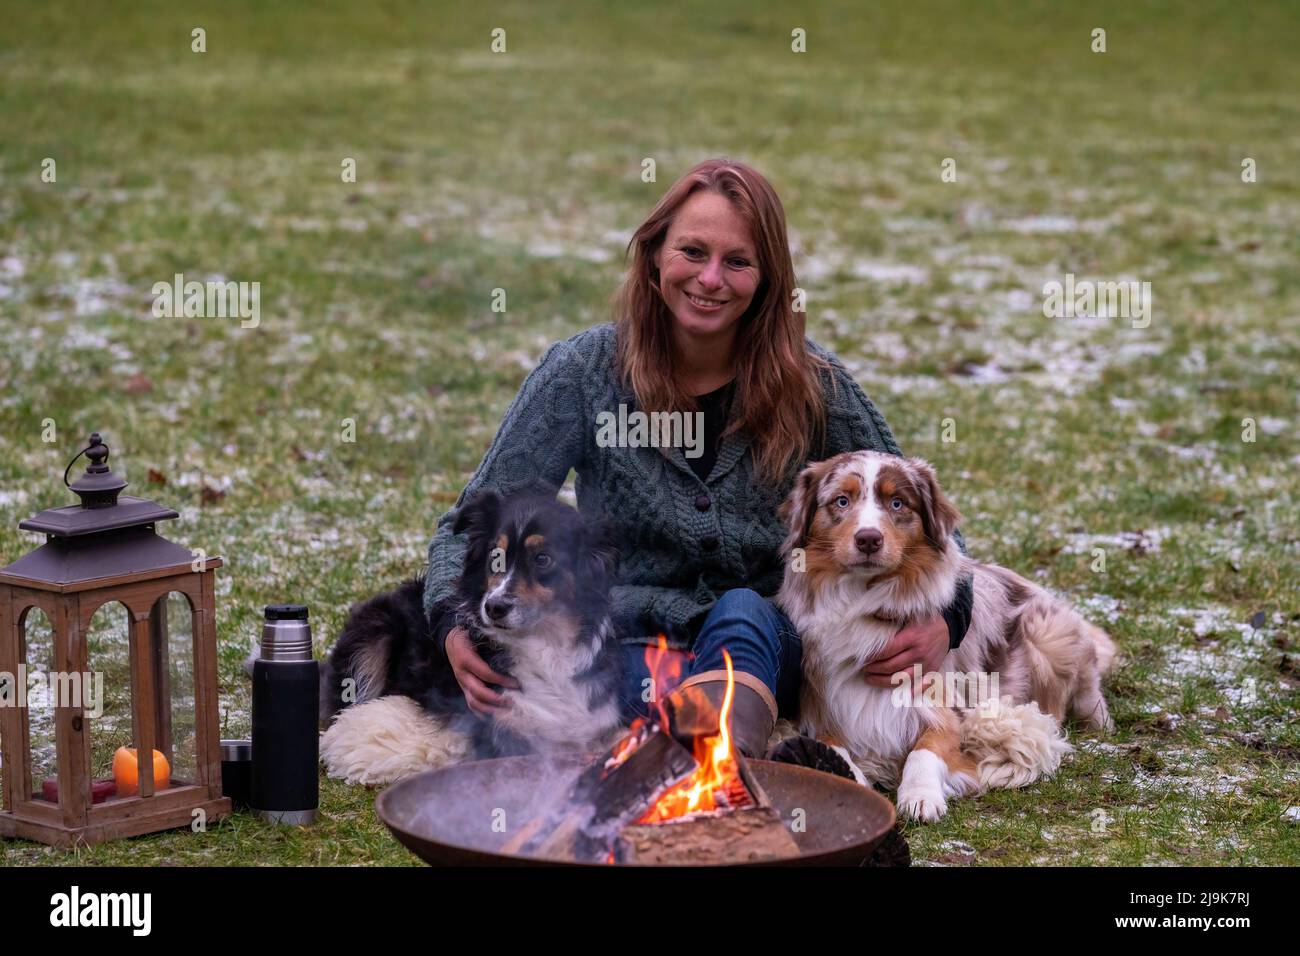 Une jeune femme est assise à l'extérieur dans les bois avec ses deux chiens de berger australiens.Neige sur l'herbe, crépuscule près du feu de camp.Câlins et compagnon Banque D'Images